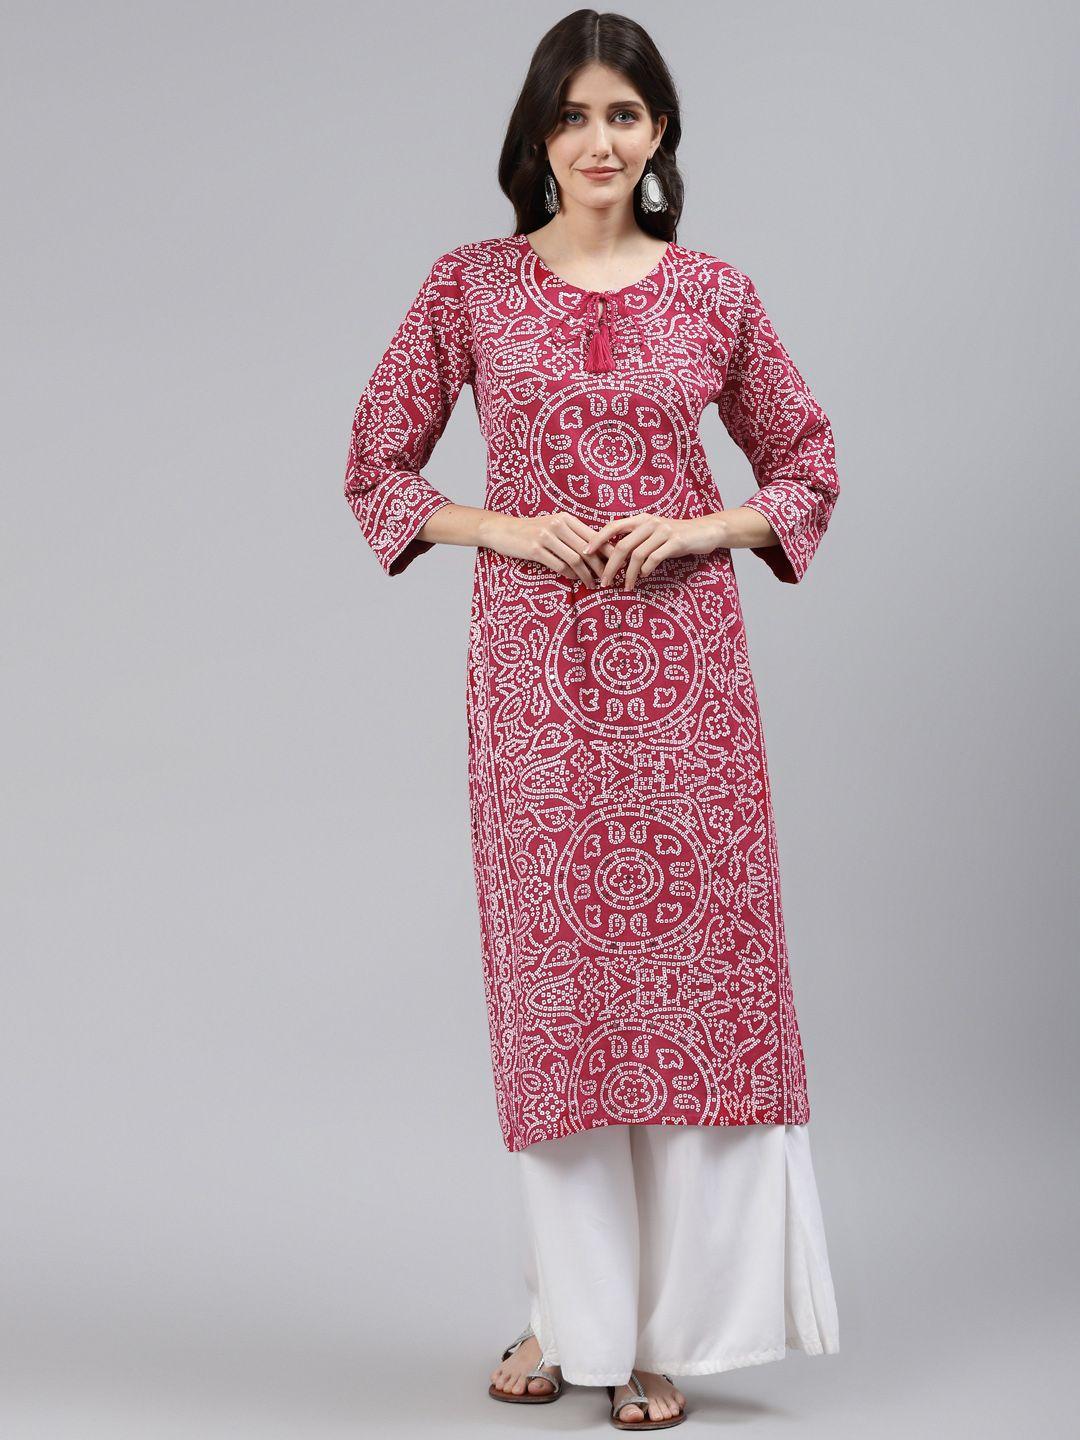 readiprint fashions women red bandhani printed mirror work cotton kurta